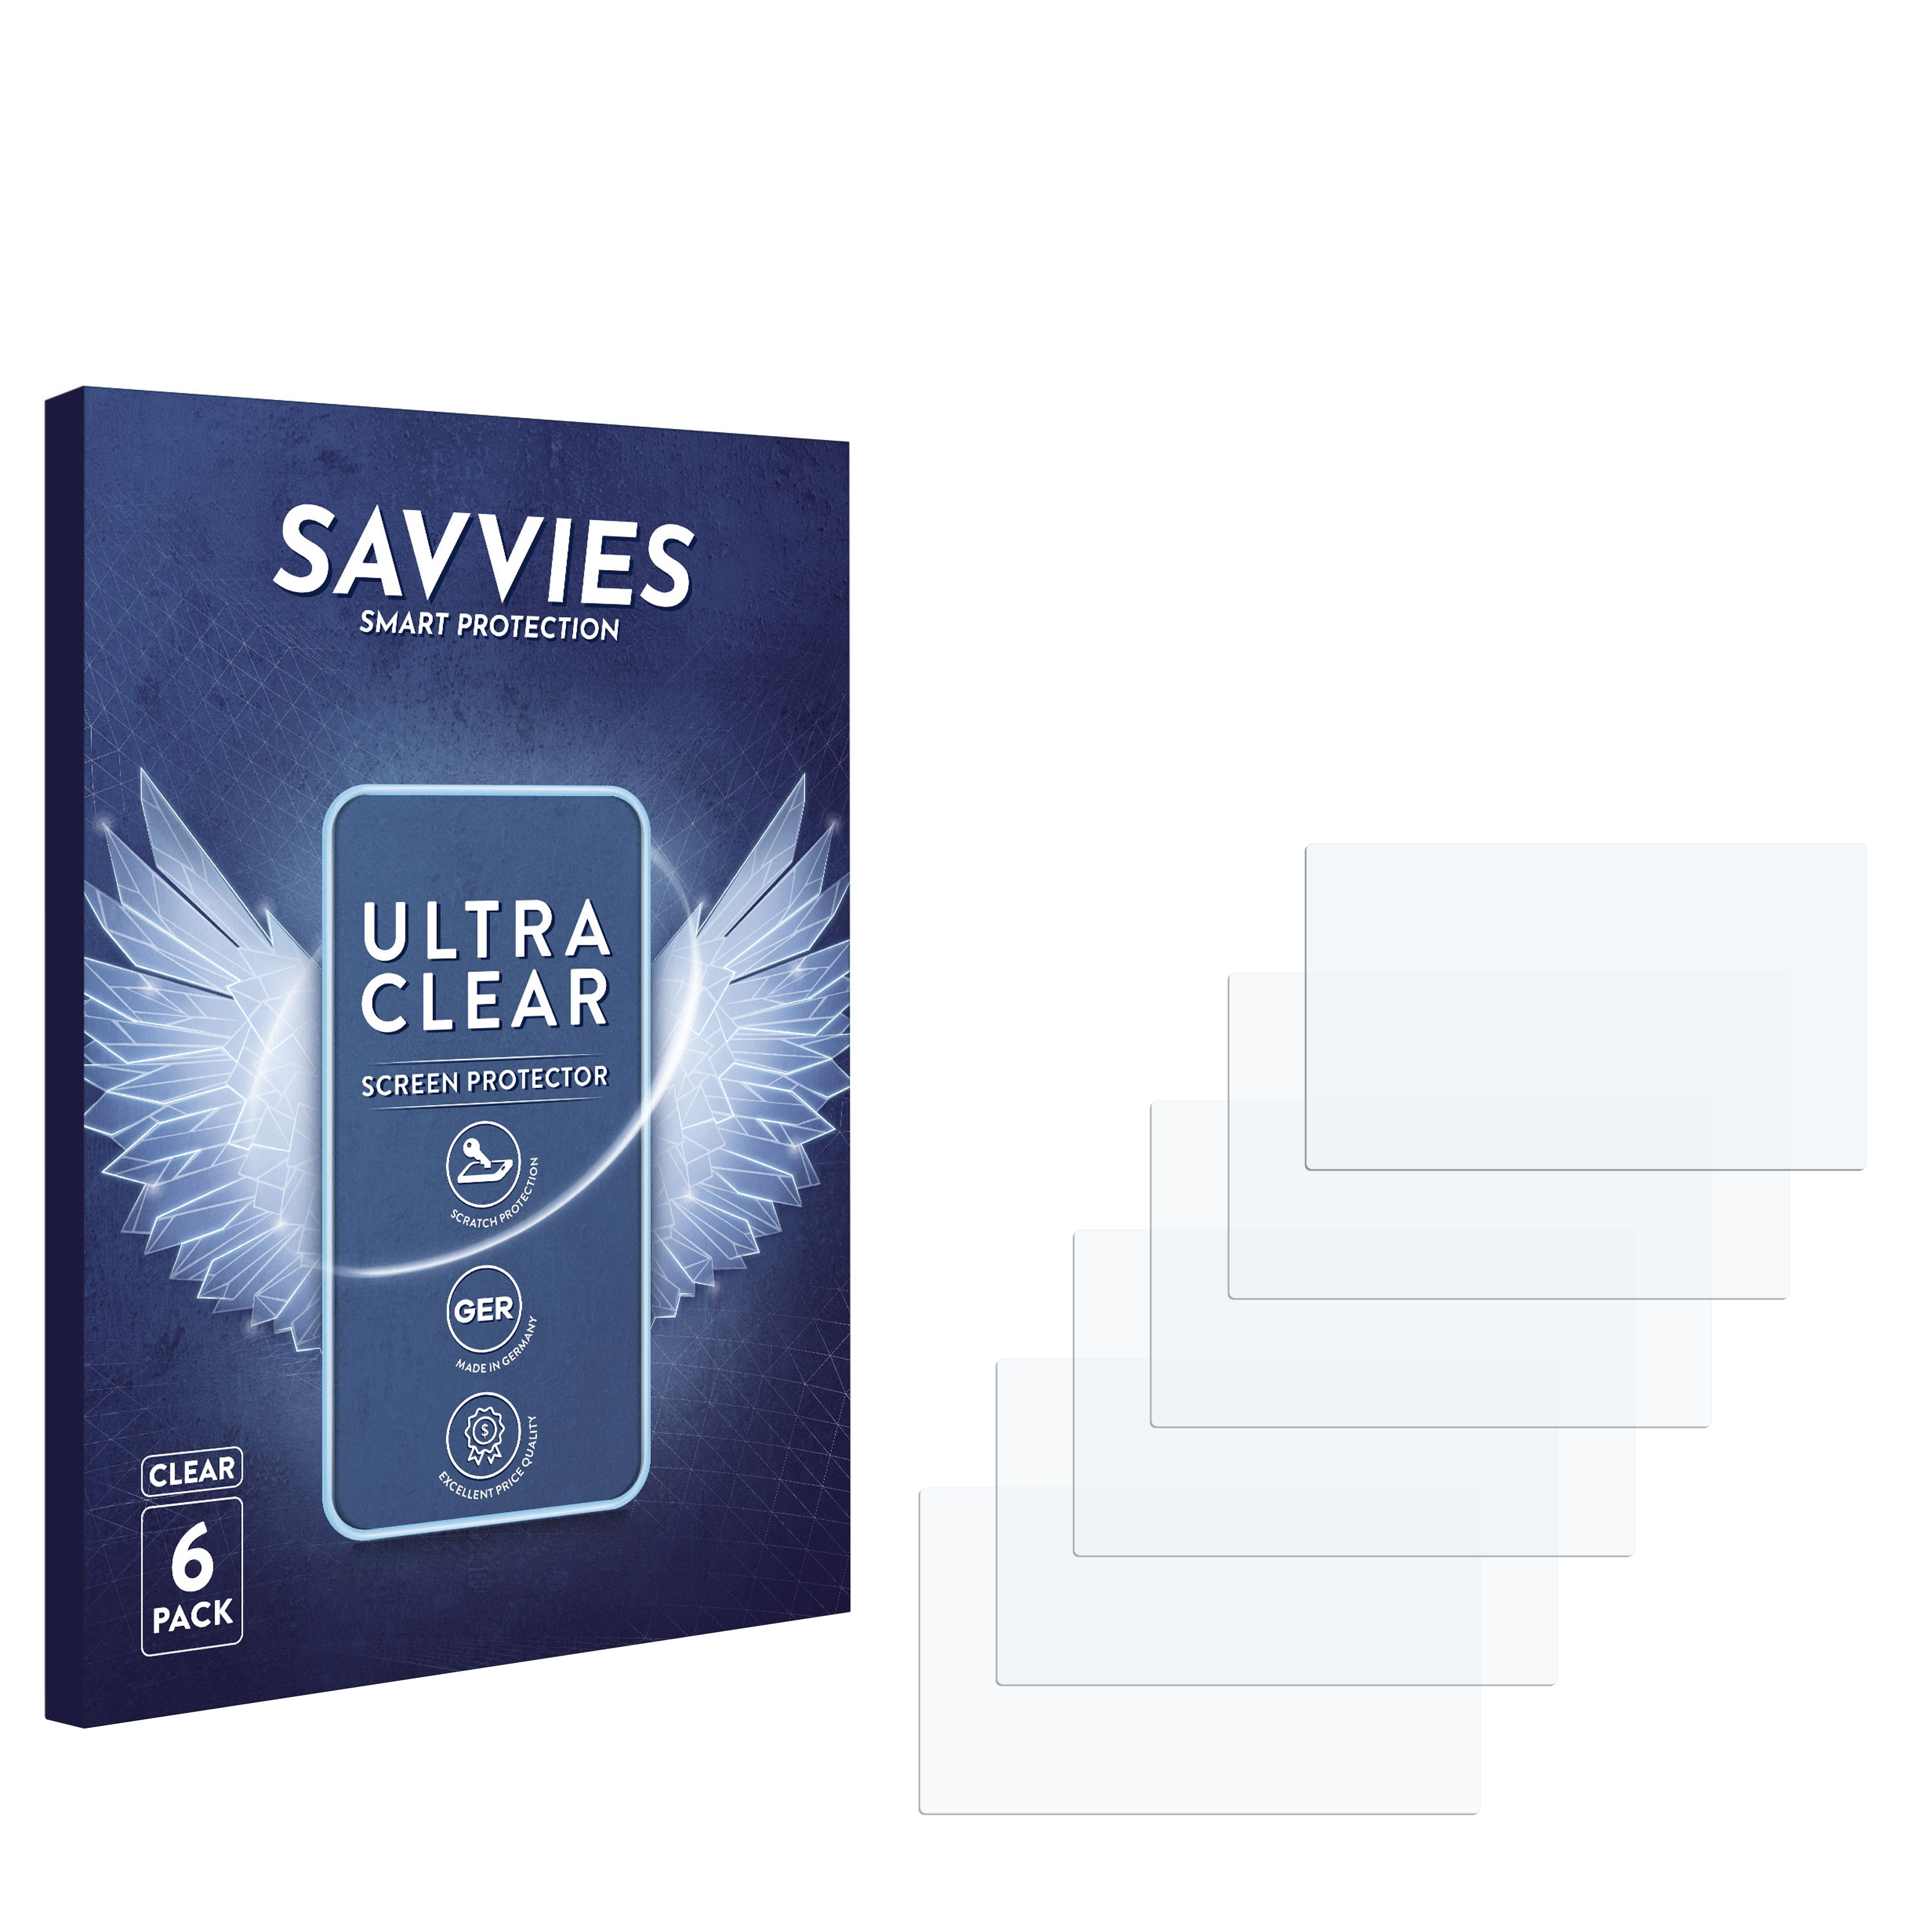 Lifebook SAVVIES Fujitsu 6x Siemens (8.9\